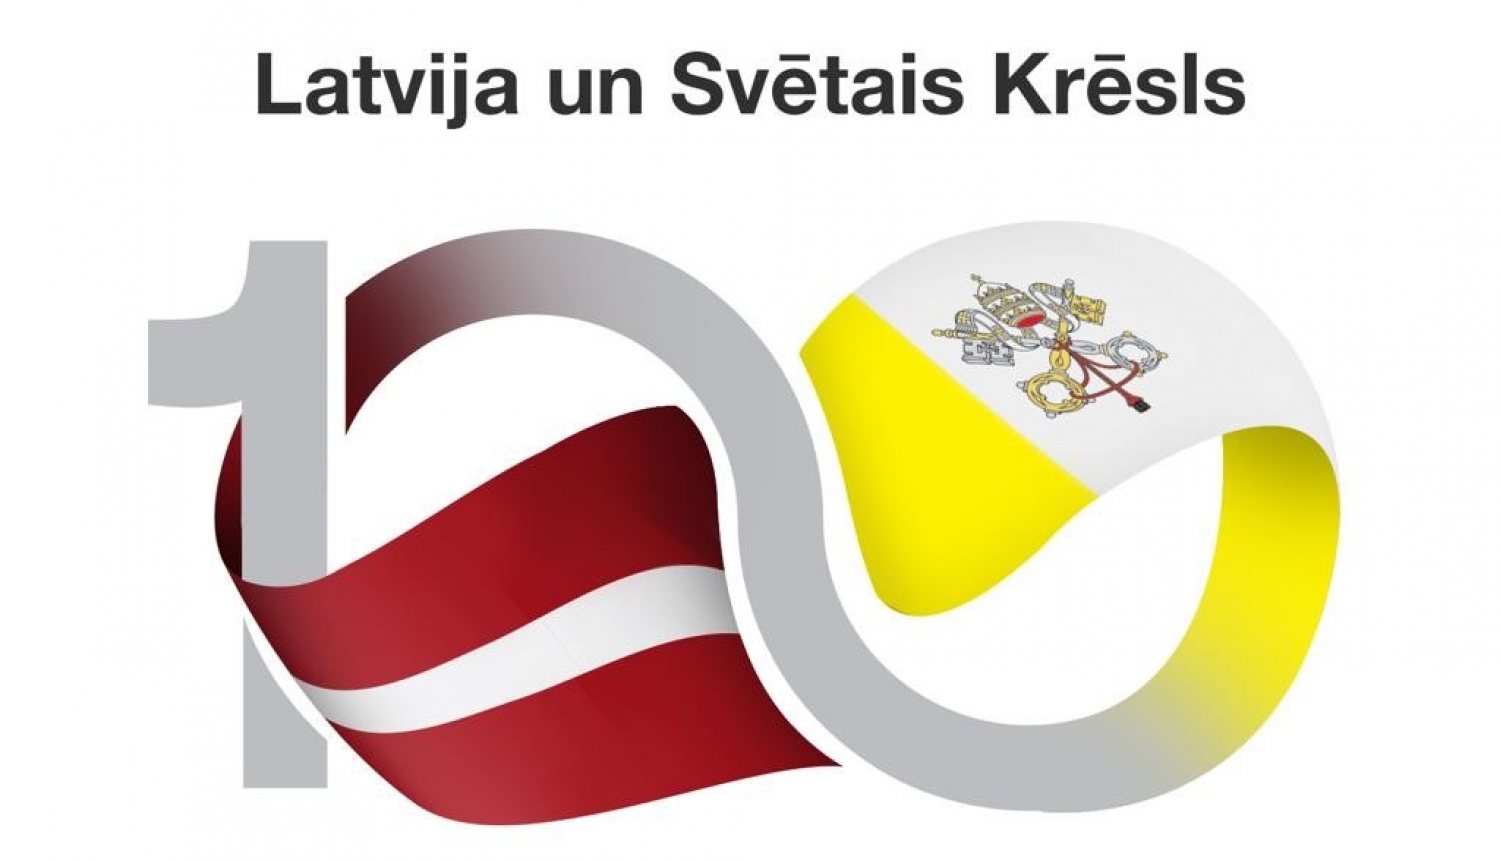 Izdod pastmarku par godu Latvijas Republikas un Svētā Krēsla konkordāta noslēgšanas 100. gadadienai